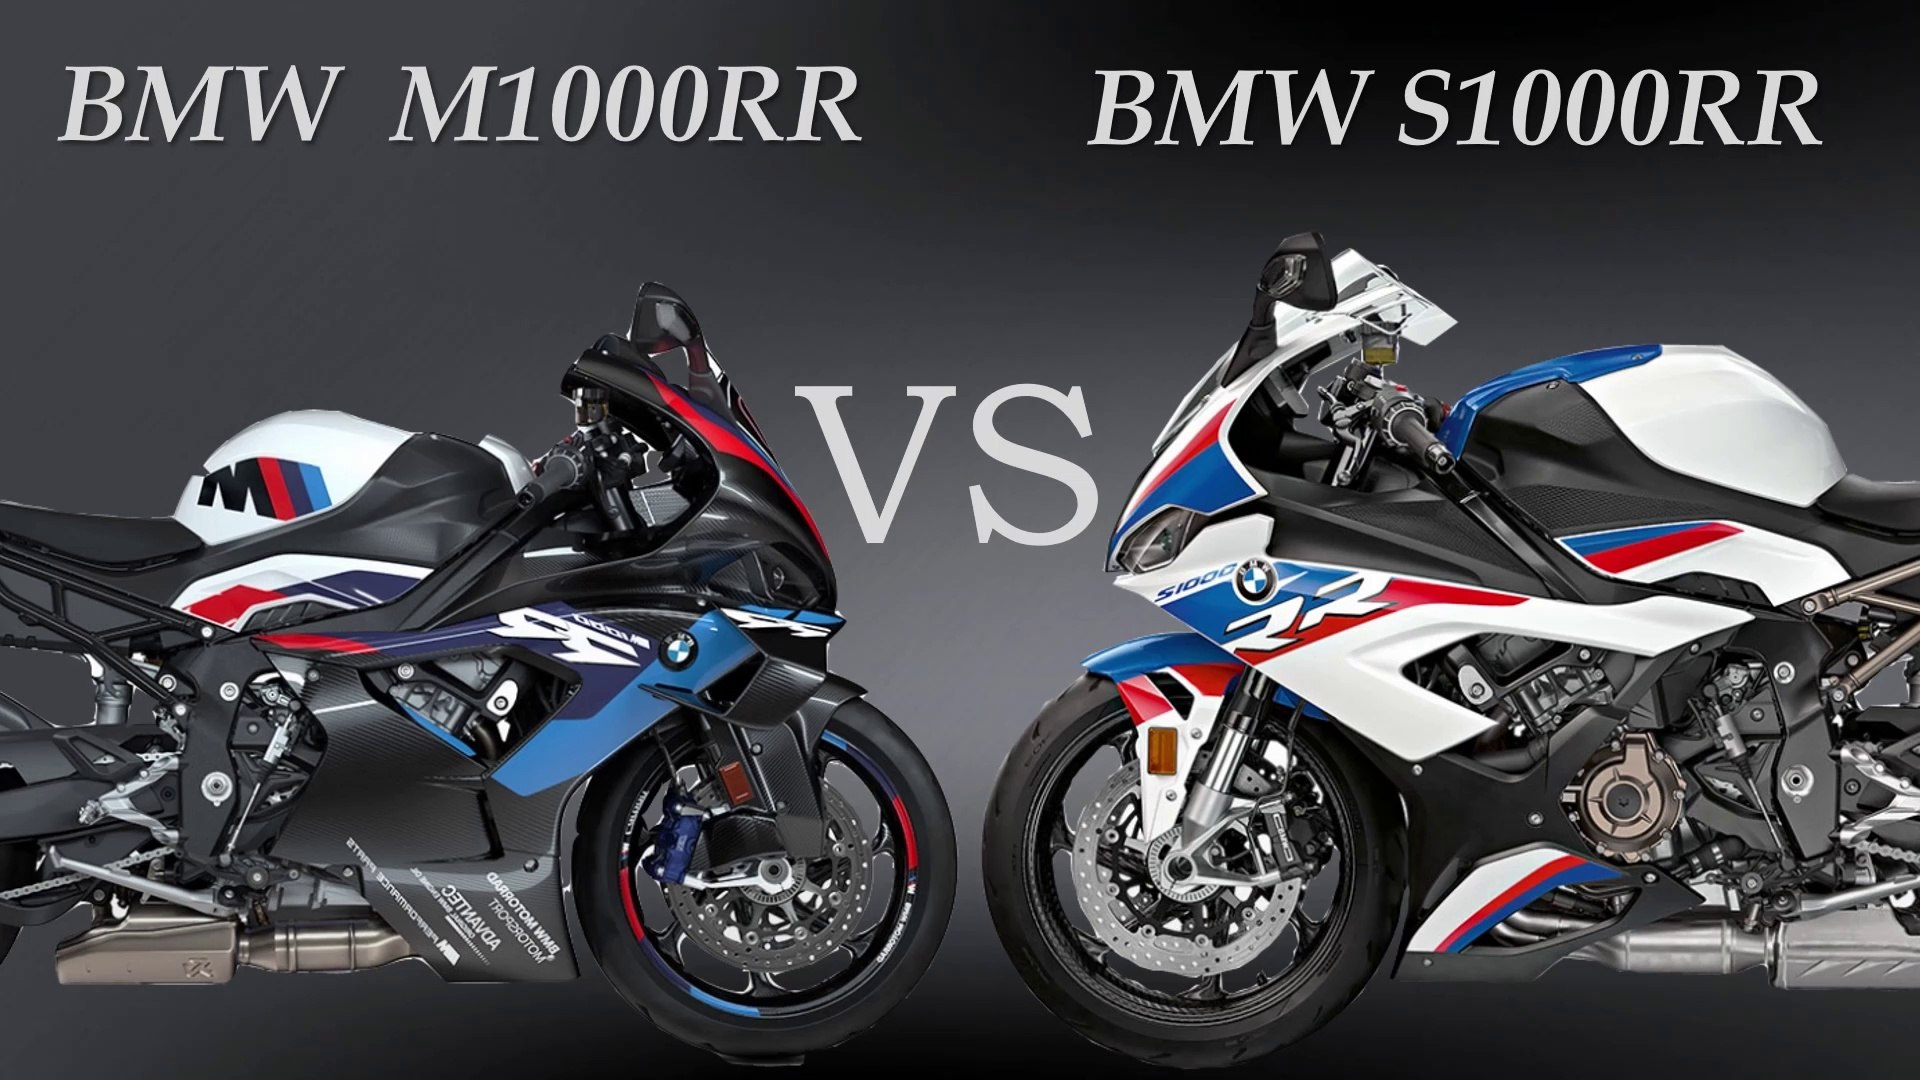 BMW M1000RR vs BMW S1000RR Comparison Video. m1000rr vs s1000rr